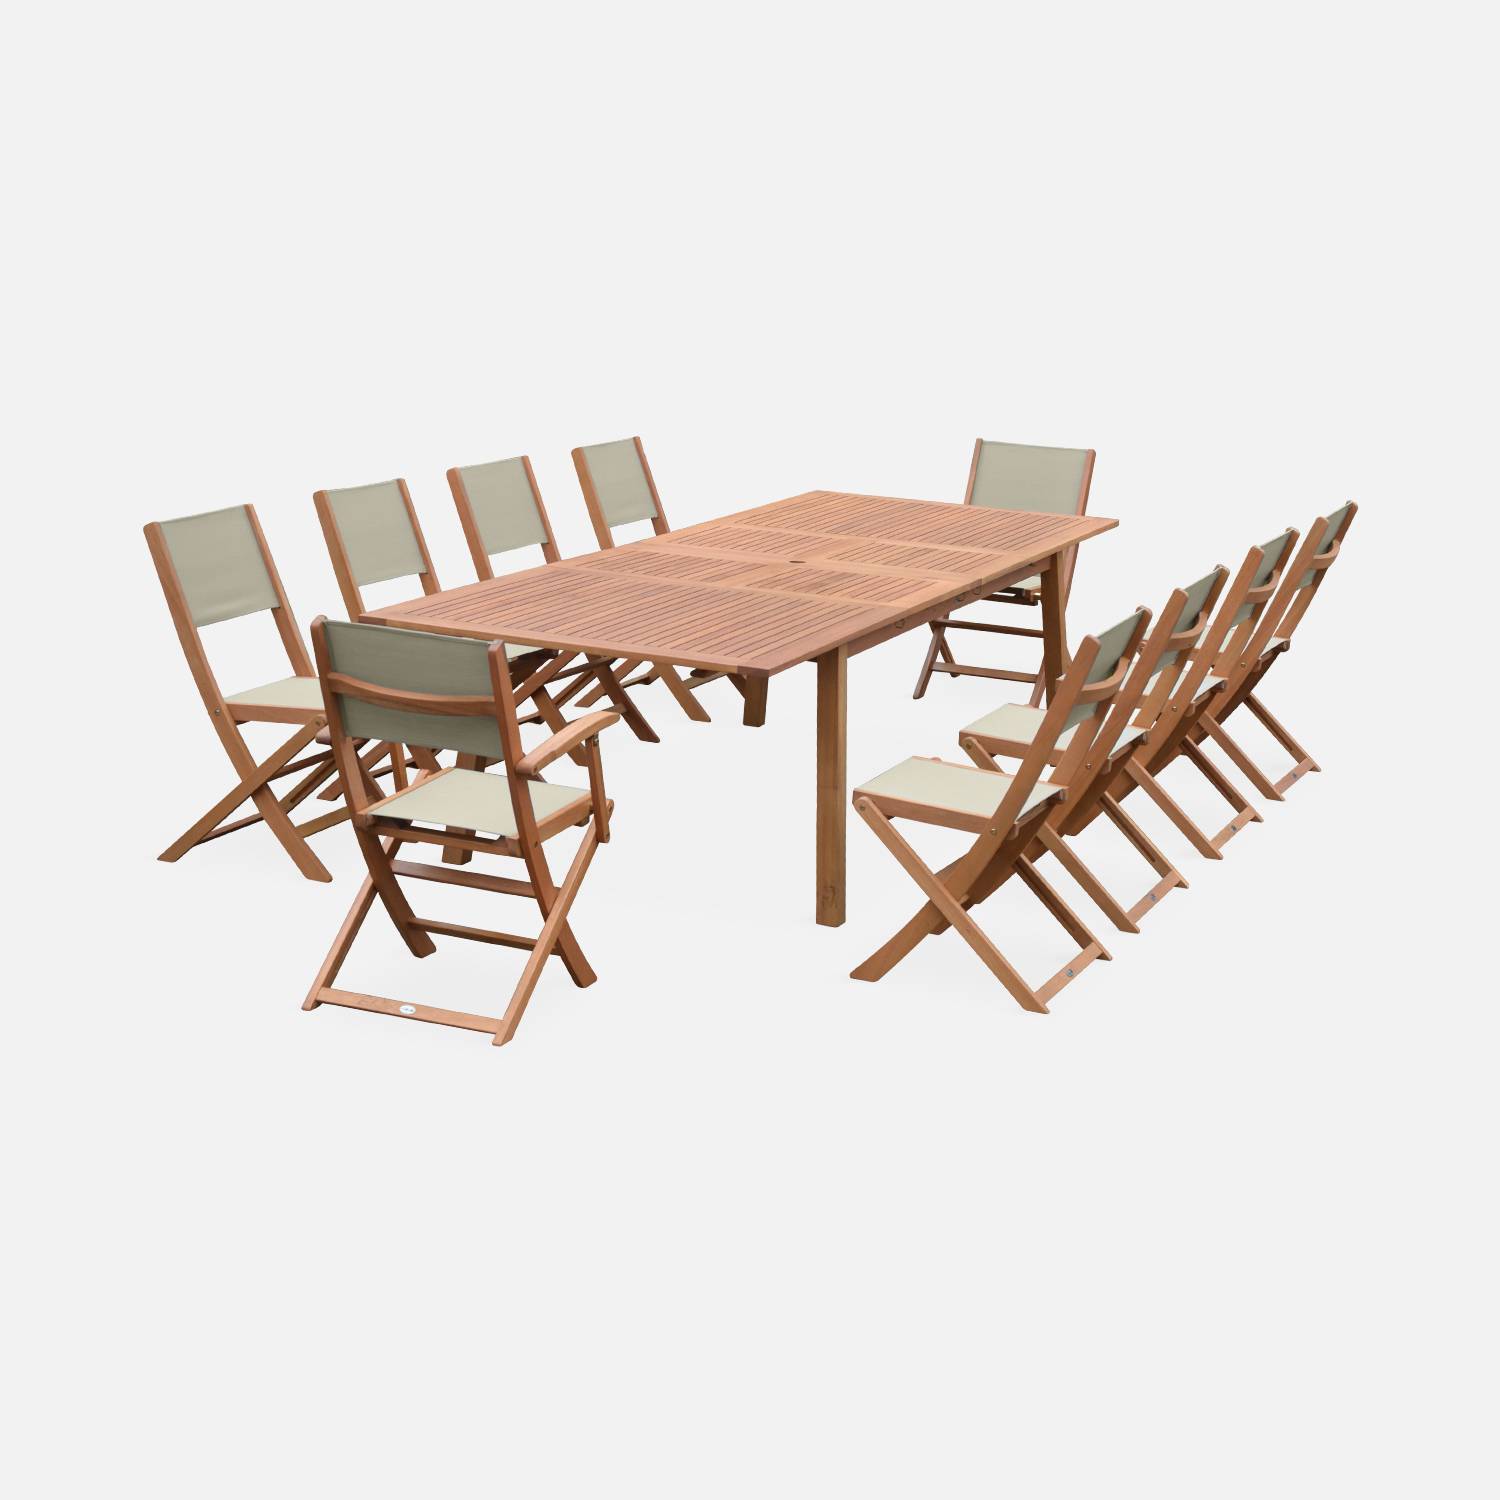 Ausziehbare Gartenmöbel aus Holz - Almeria -mit 2 Verlängerungen, 2 Sesseln und 8 Stühlen, Eukalyptusholz und Textilene | sweeek